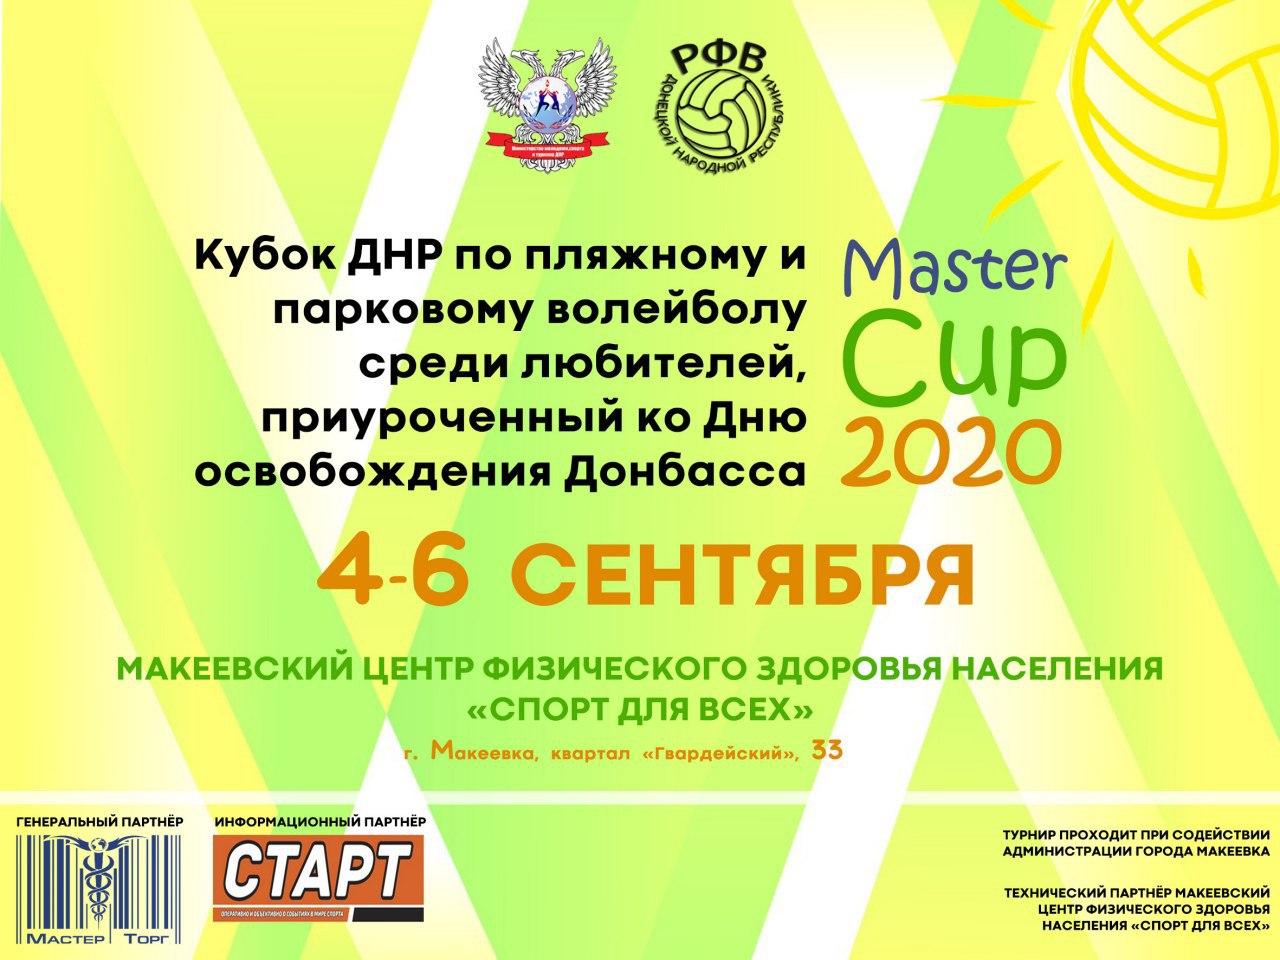 В Макеевке разыграют Кубок ДНР по пляжному и парковому волейболу «Master Cup 2020»